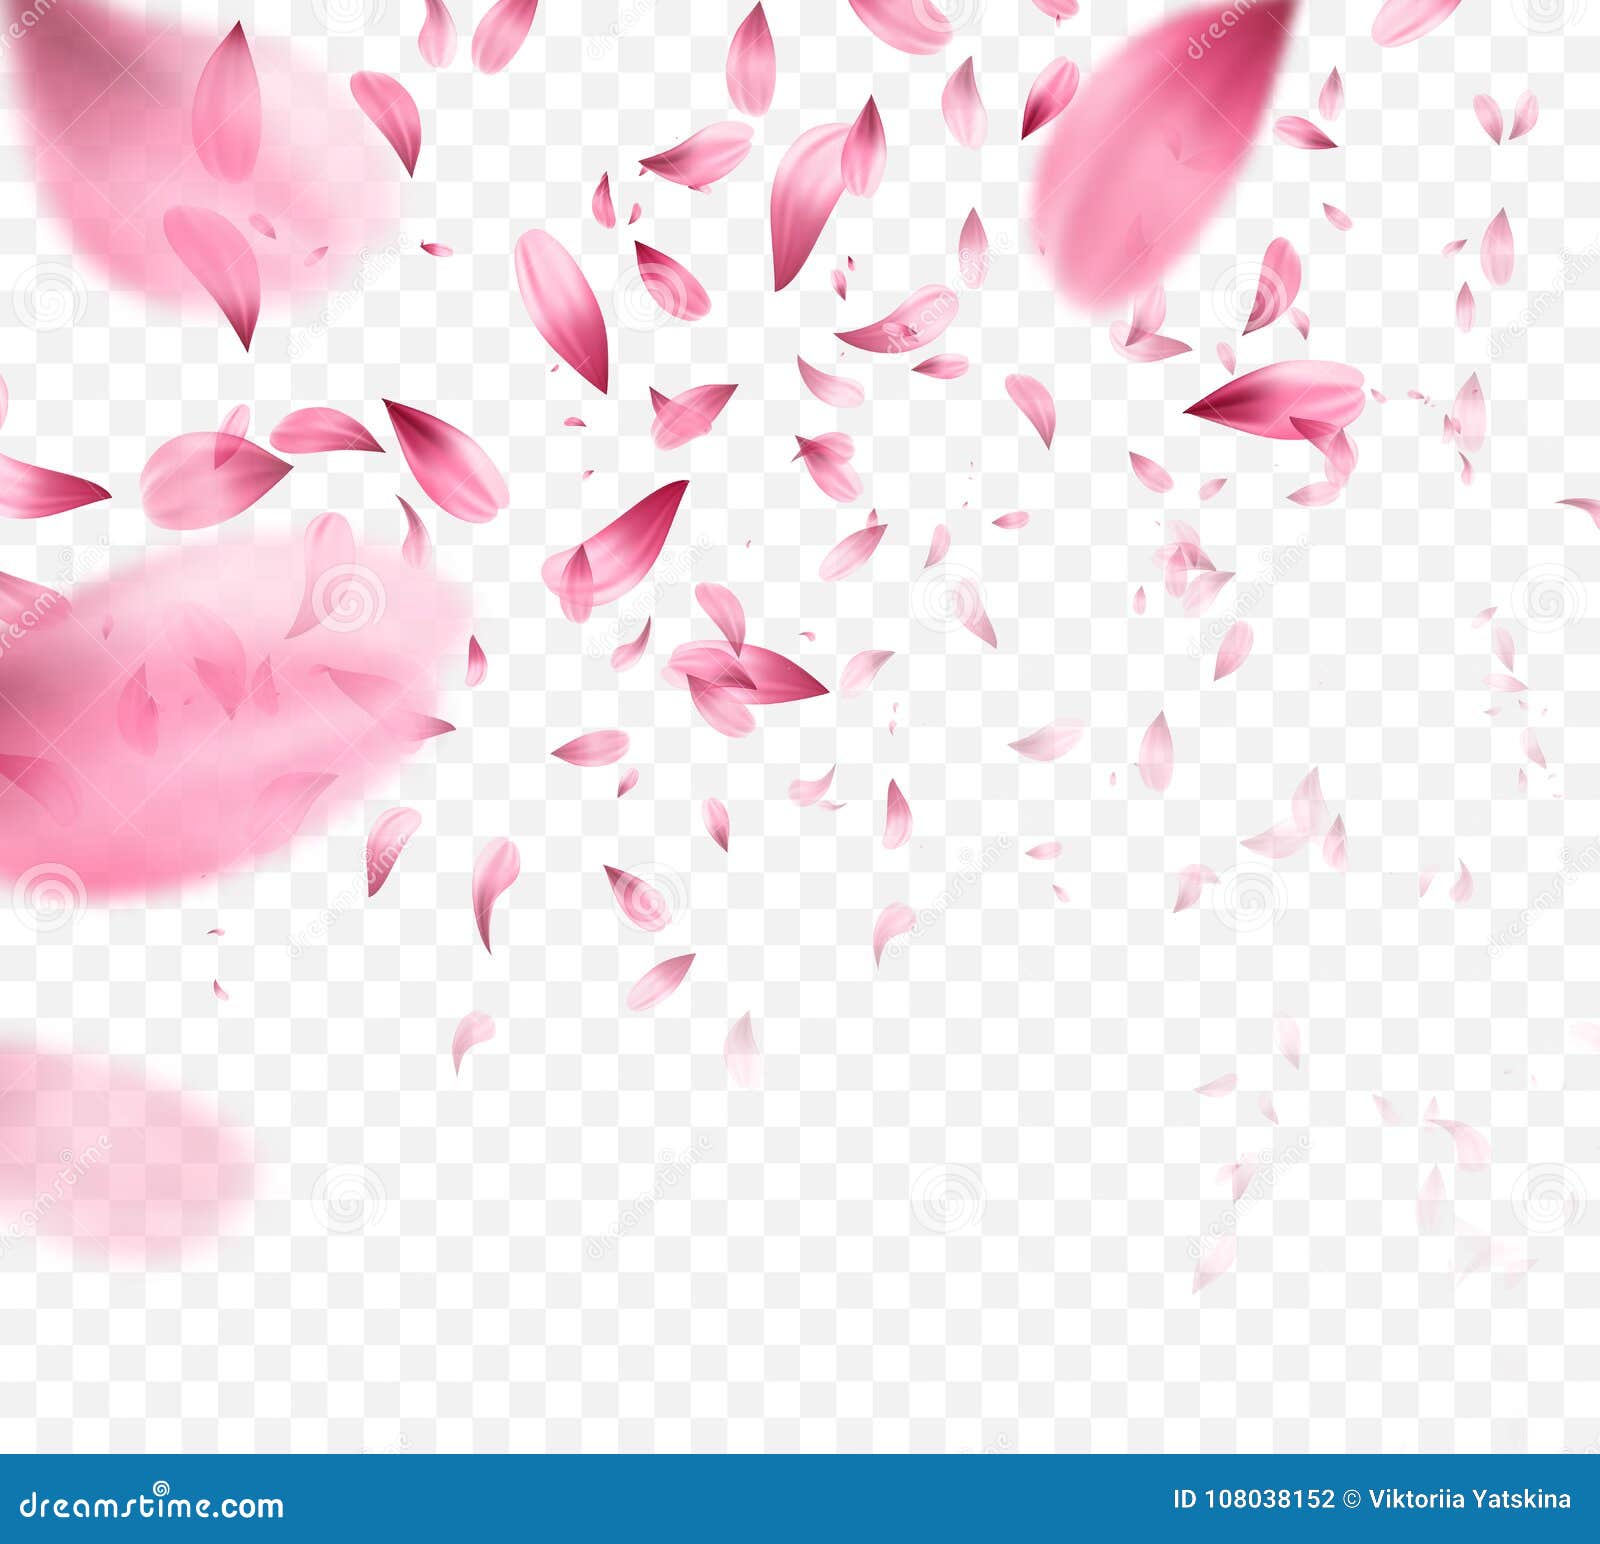 pink sakura falling petals background.  